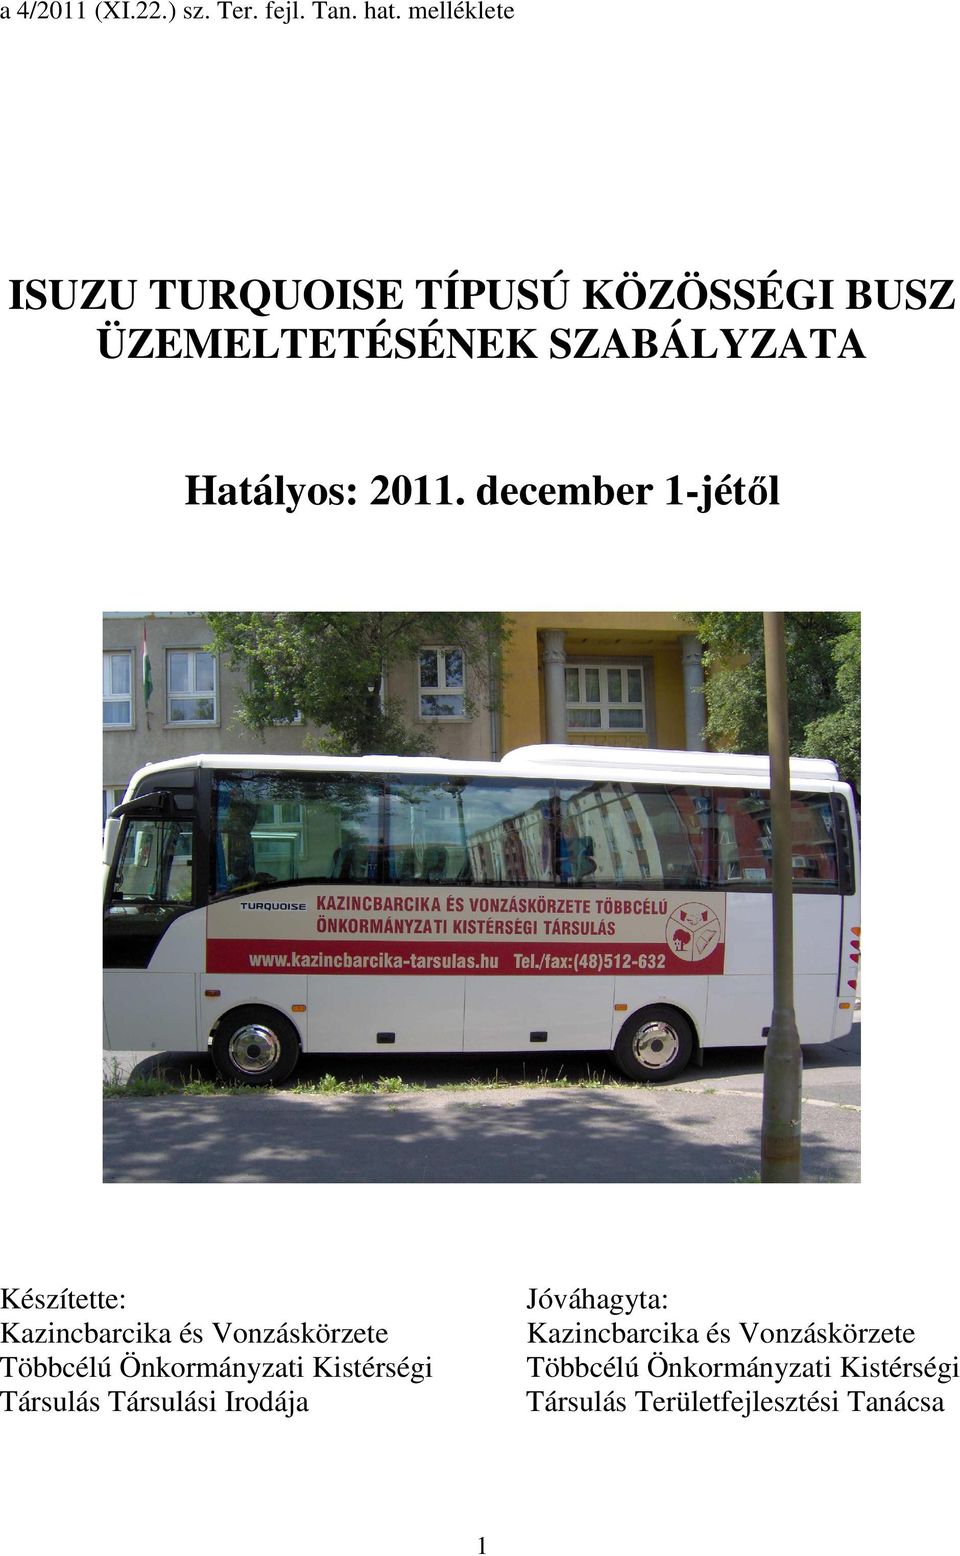 december 1-jétıl Készítette: Kazincbarcika és Vonzáskörzete Többcélú Önkormányzati